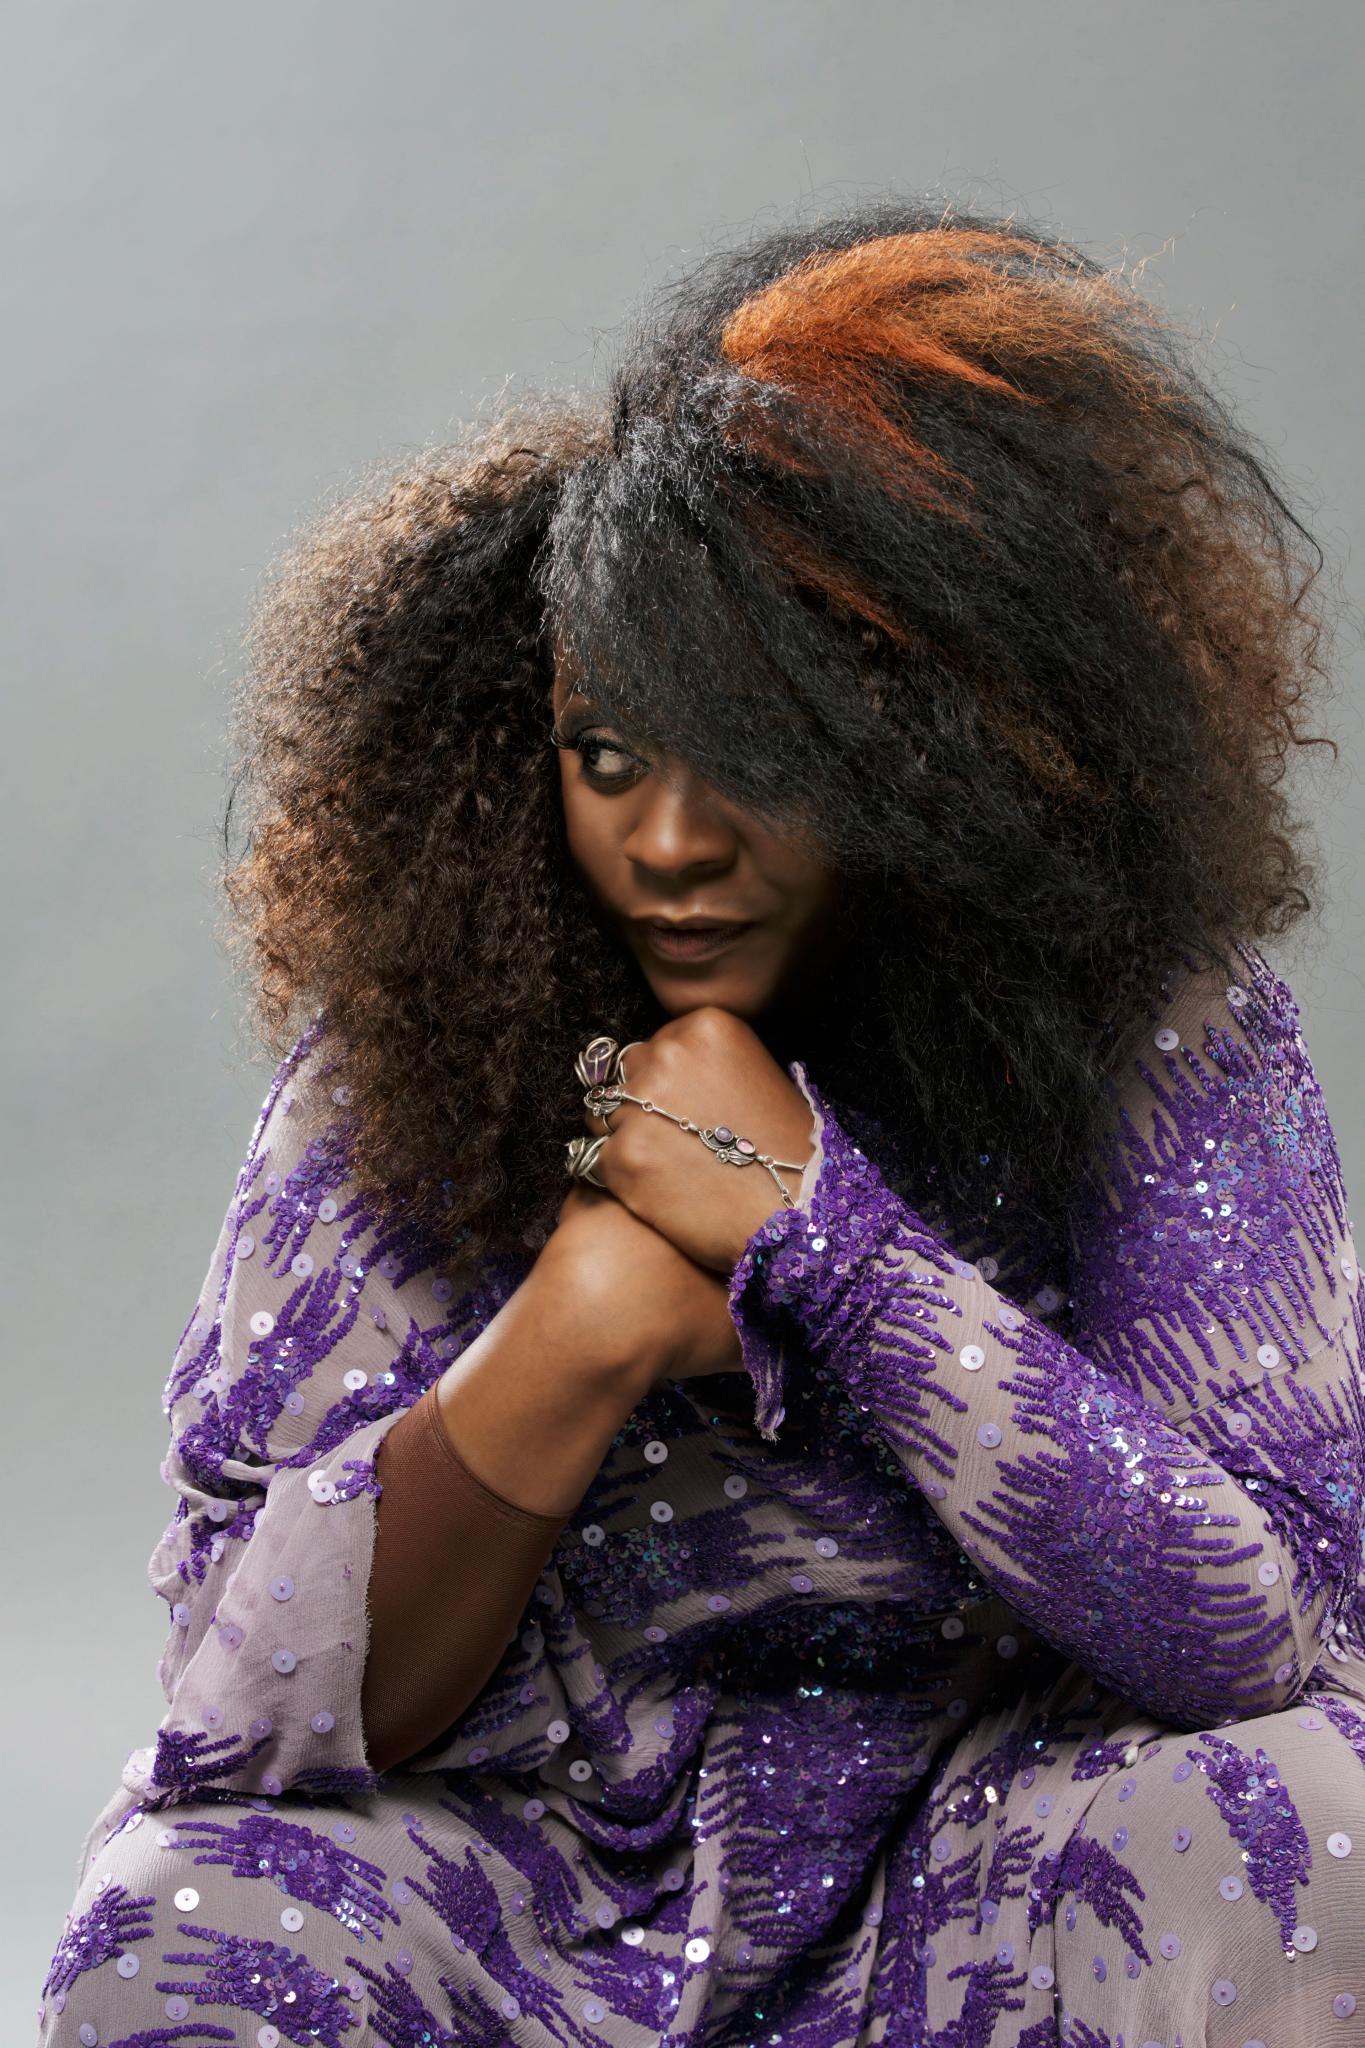 Sandra St. Victor on Her New Album 'Oya's Daughter'